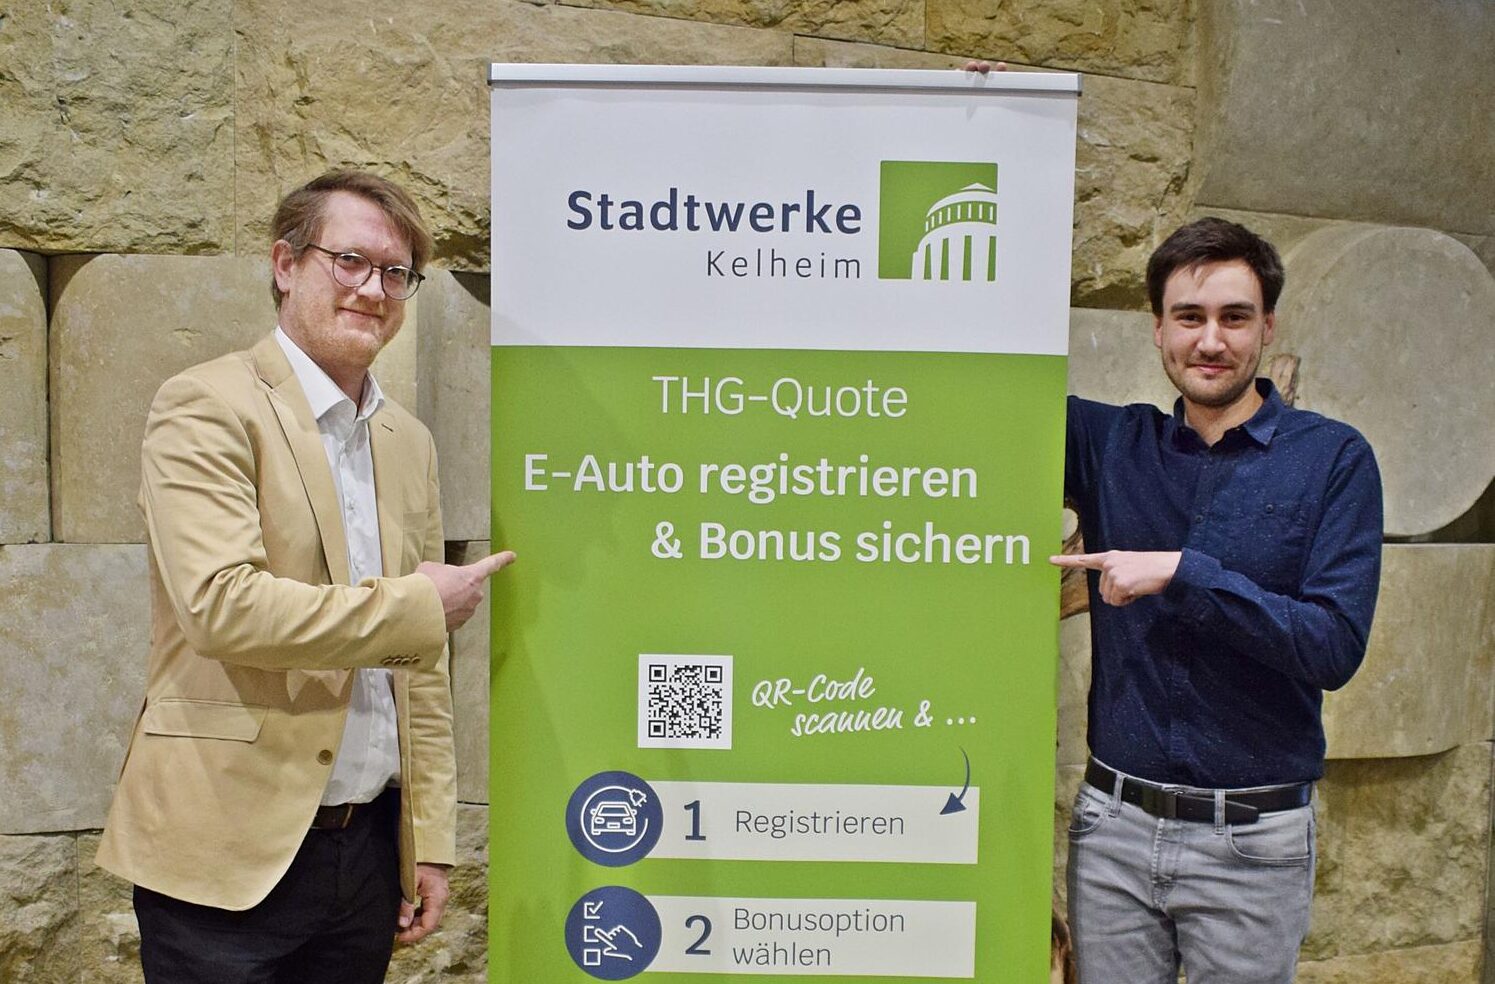 Johannes Gotthardt und Felix Ipfelkofer (Stadtwerke Kelheim) informieren über die THG-Quote.